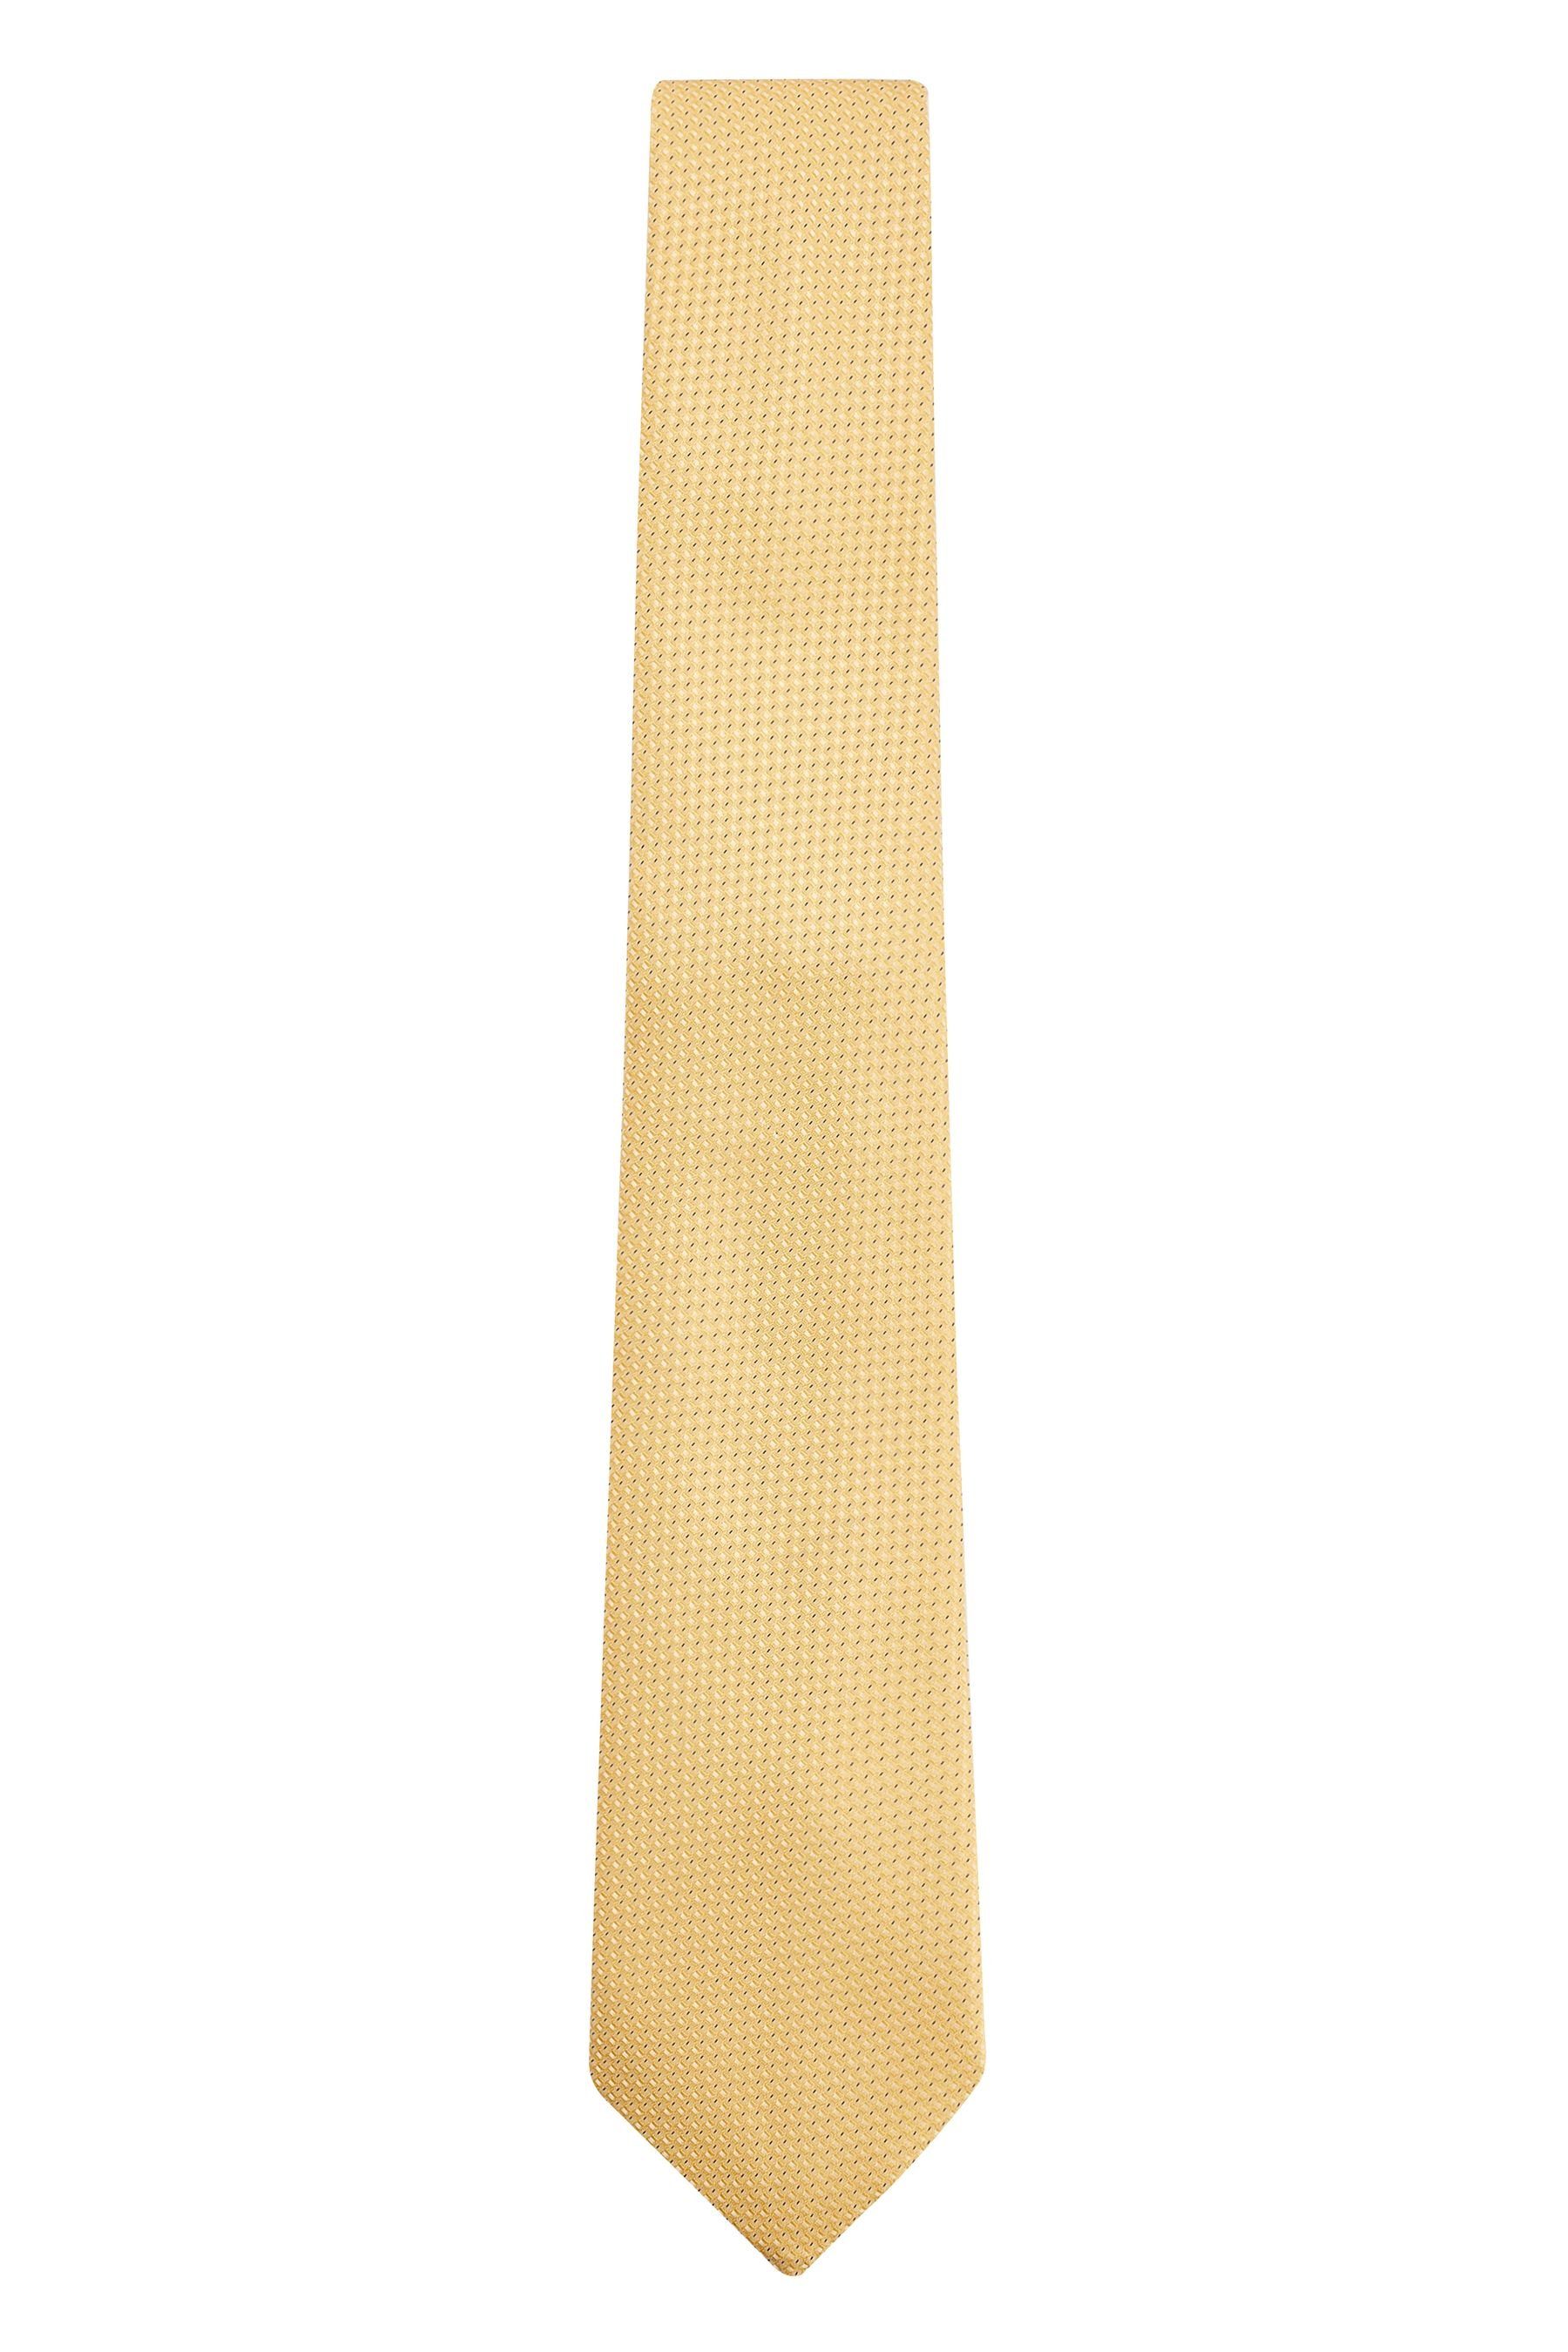 Next Krawatte und Navy Set (2-St) Krawatte Floral Yellow/Blue aus Einstecktuch